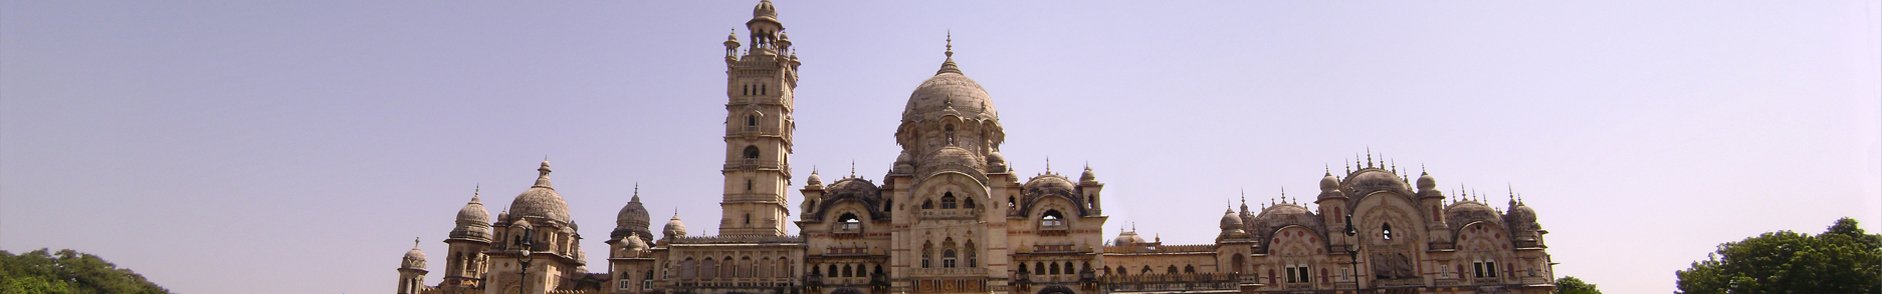 Vechaar Utensils Museum Gujarat